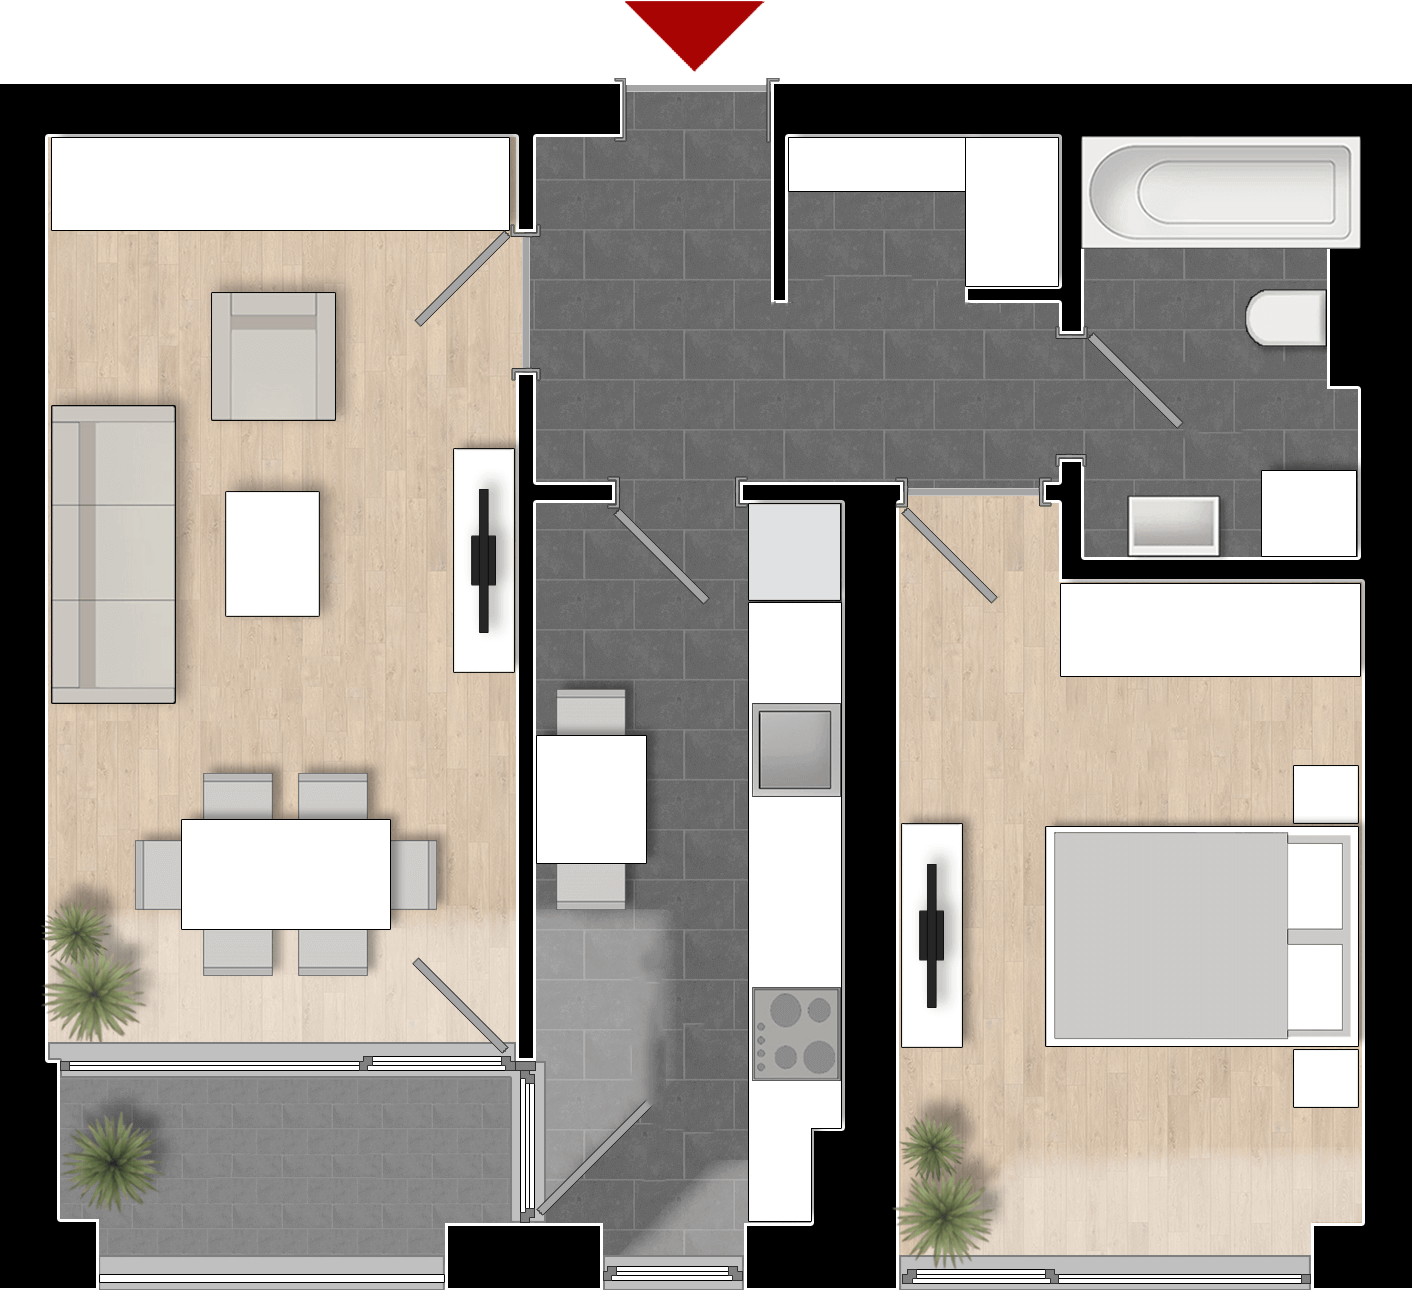  Apartament 302, Tip de apartament 2A cu 2 camere 